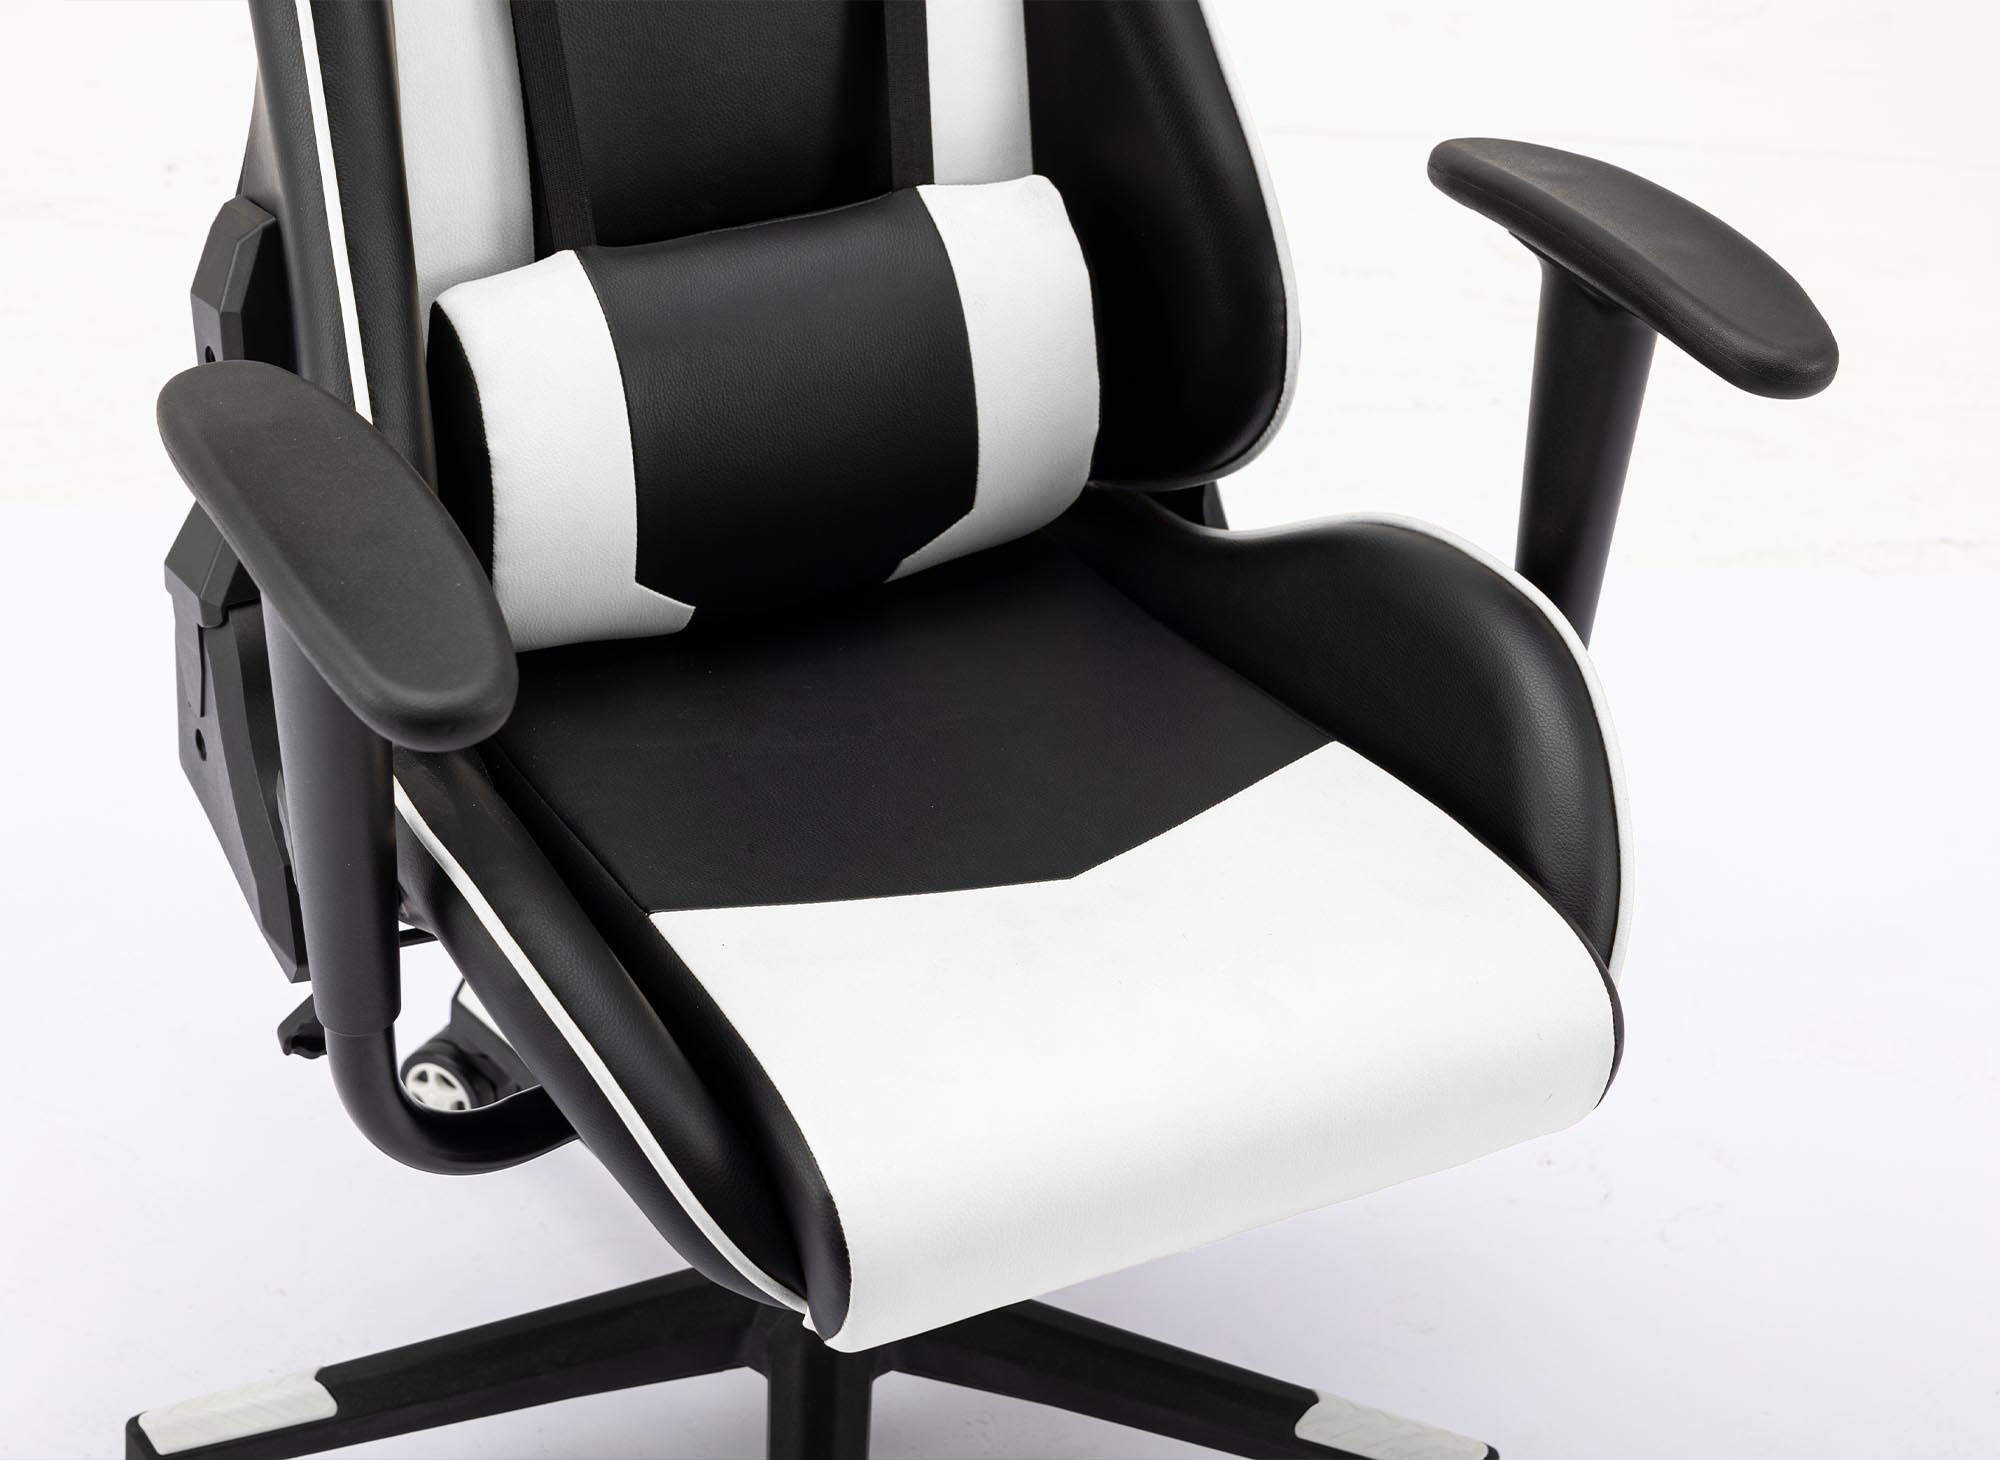 Chaise bureau gaming ergonomique en cuir, siège gamer réglable